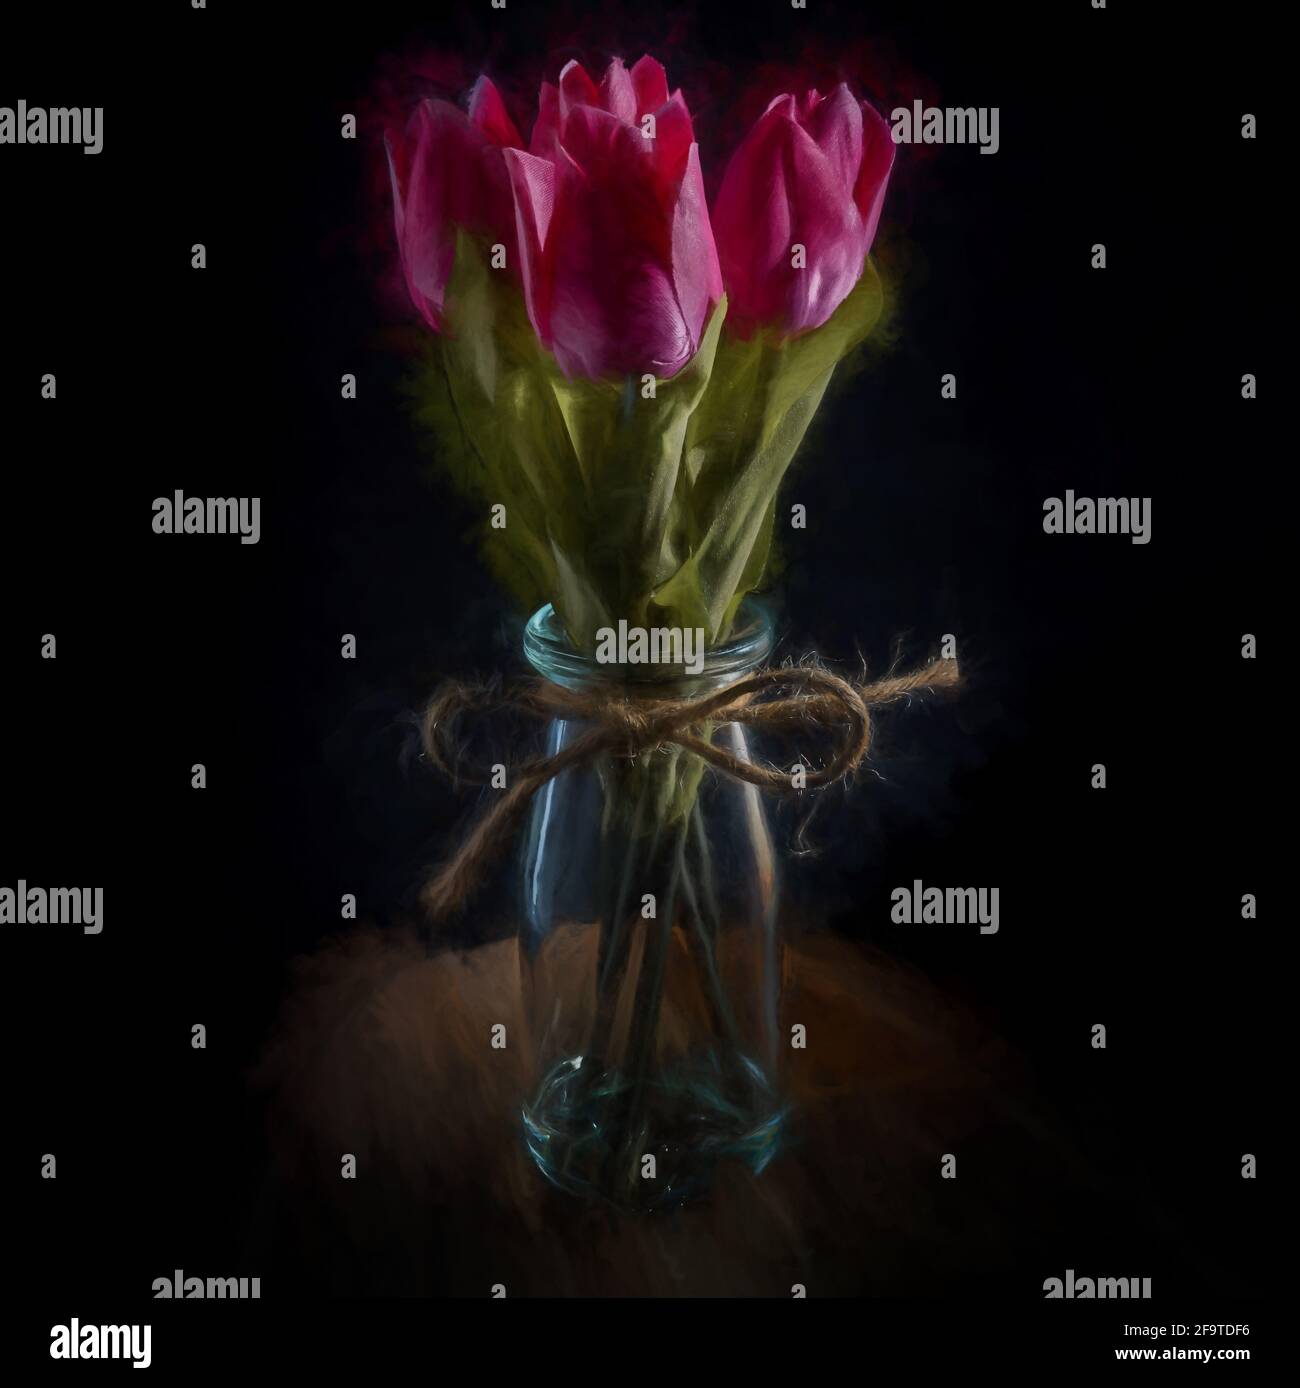 Peinture numérique d'un bouquet de fleurs de tulipe rose dans une bouteille en verre isolée sur fond noir. Banque D'Images